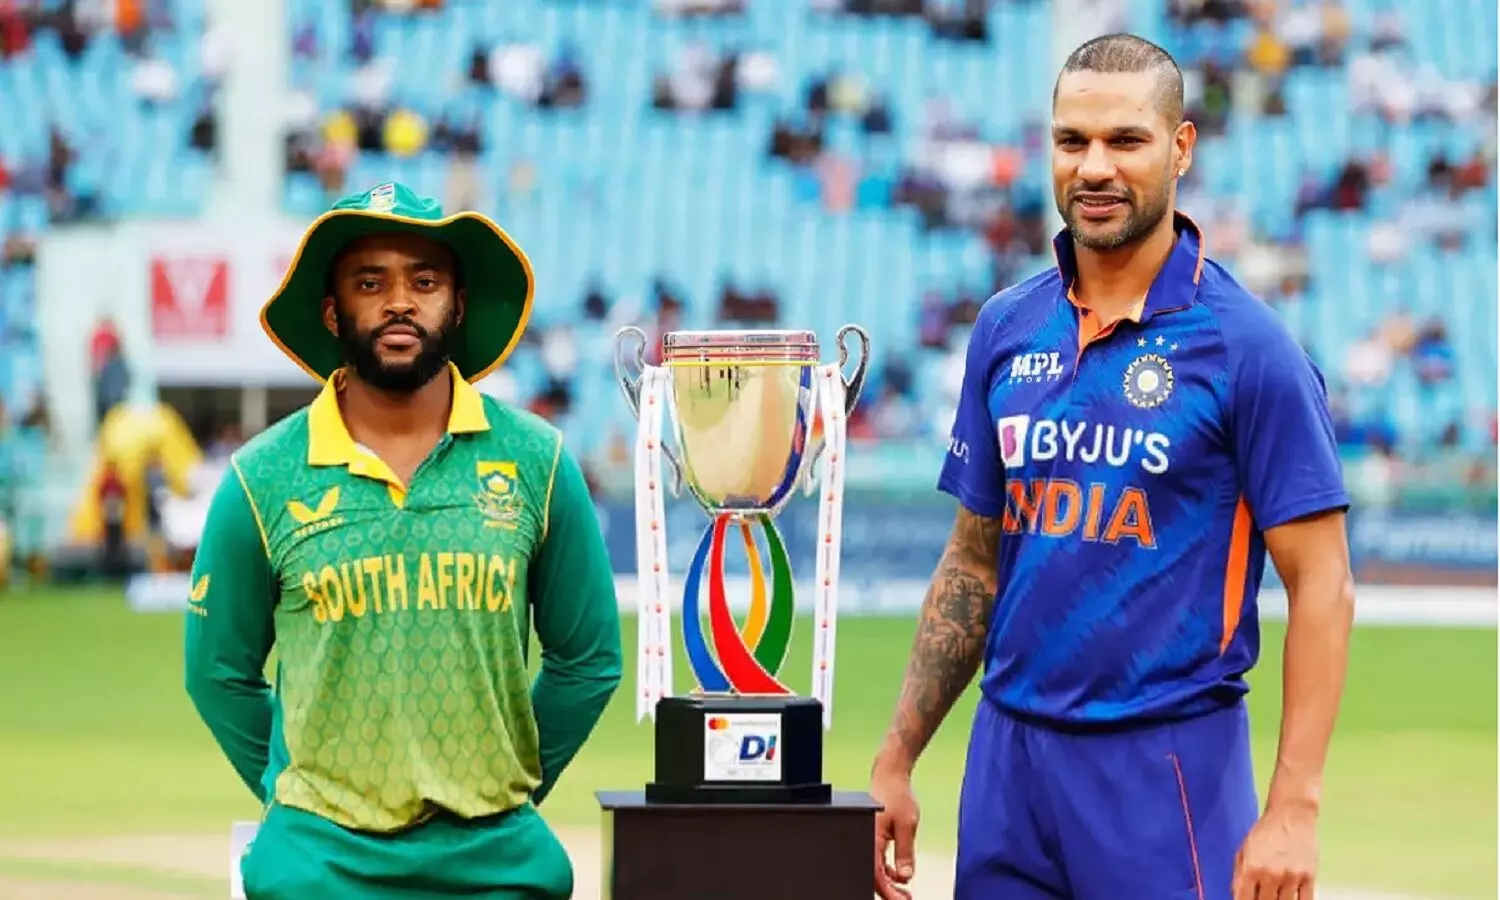 IND Vs SA Finals: भारत Vs साऊथ अफ्रीका का फ़ाइनल मैच आज, जानें दोनों टीमों की प्लेइंग 11